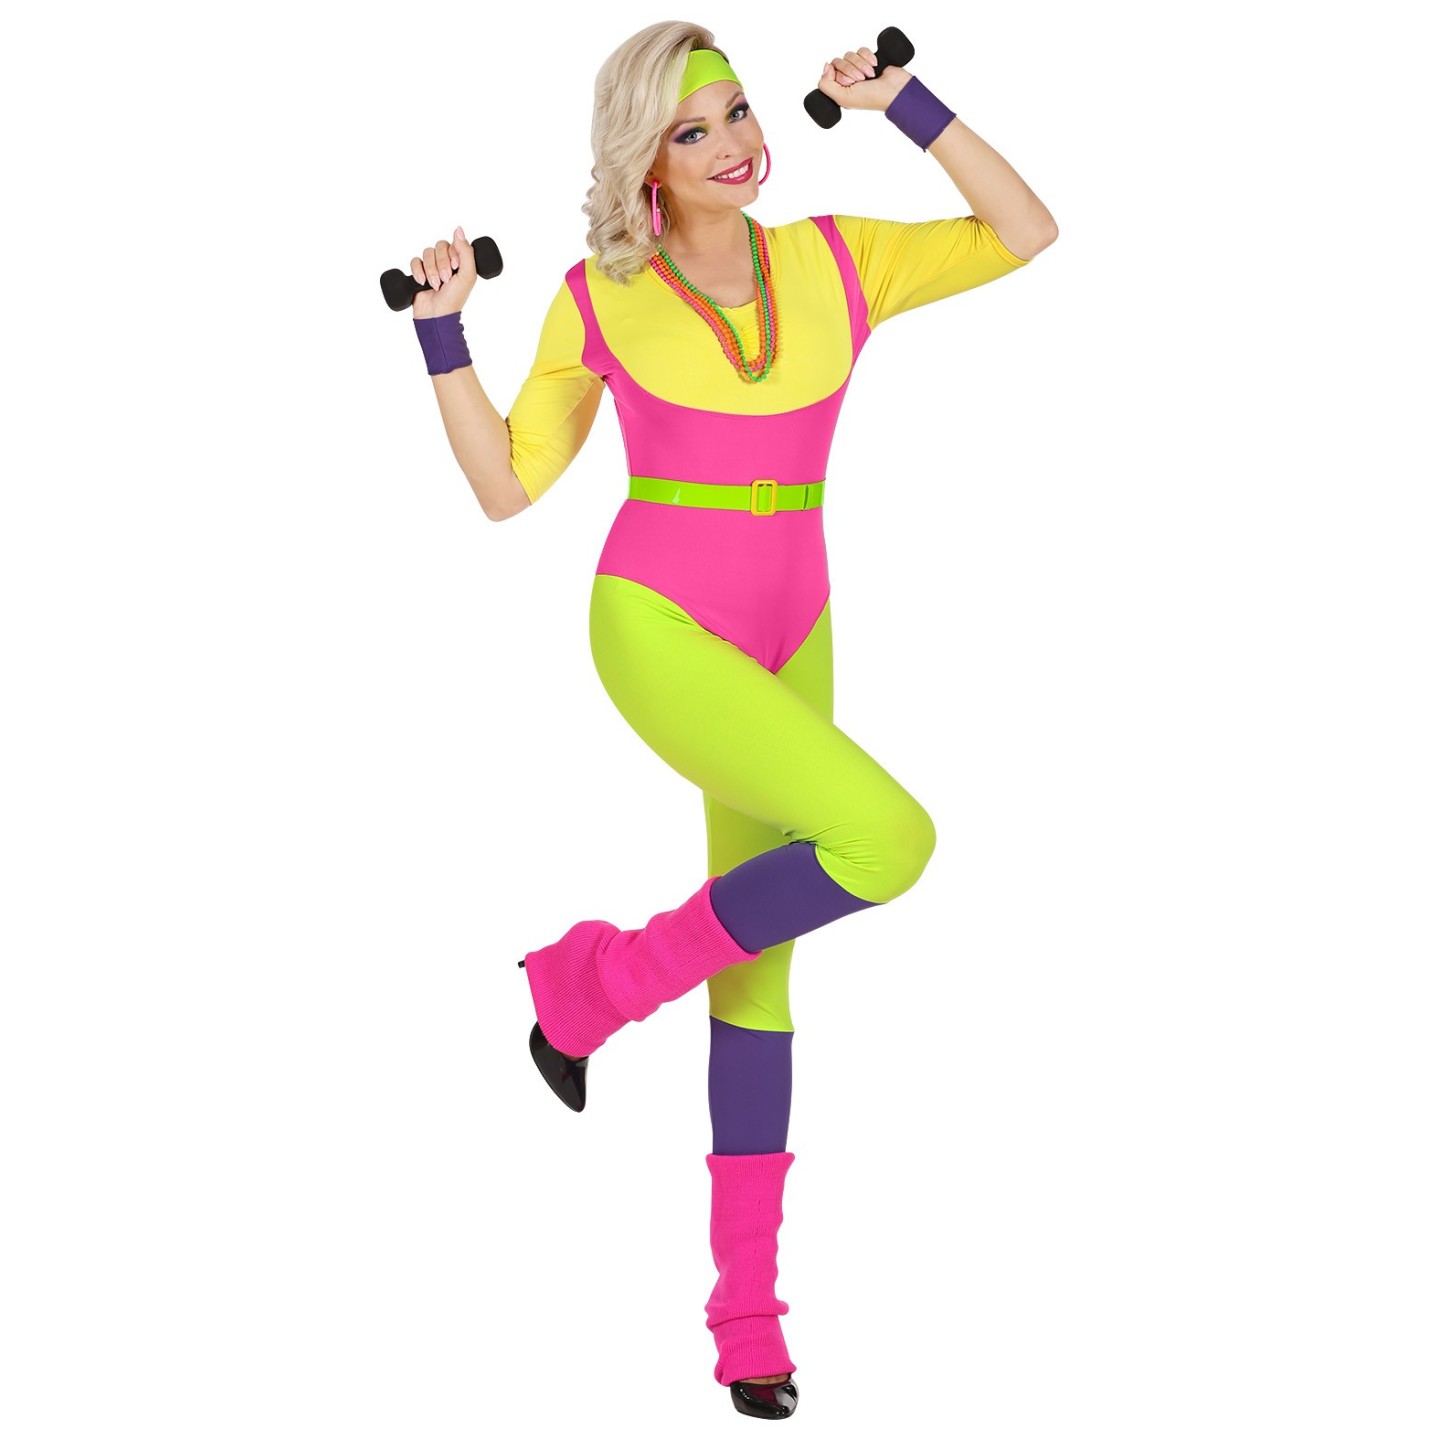 Of anders voering Scarp Jaren 80 pakje Fitness instructrice | Jokershop.be - Retro kostuums